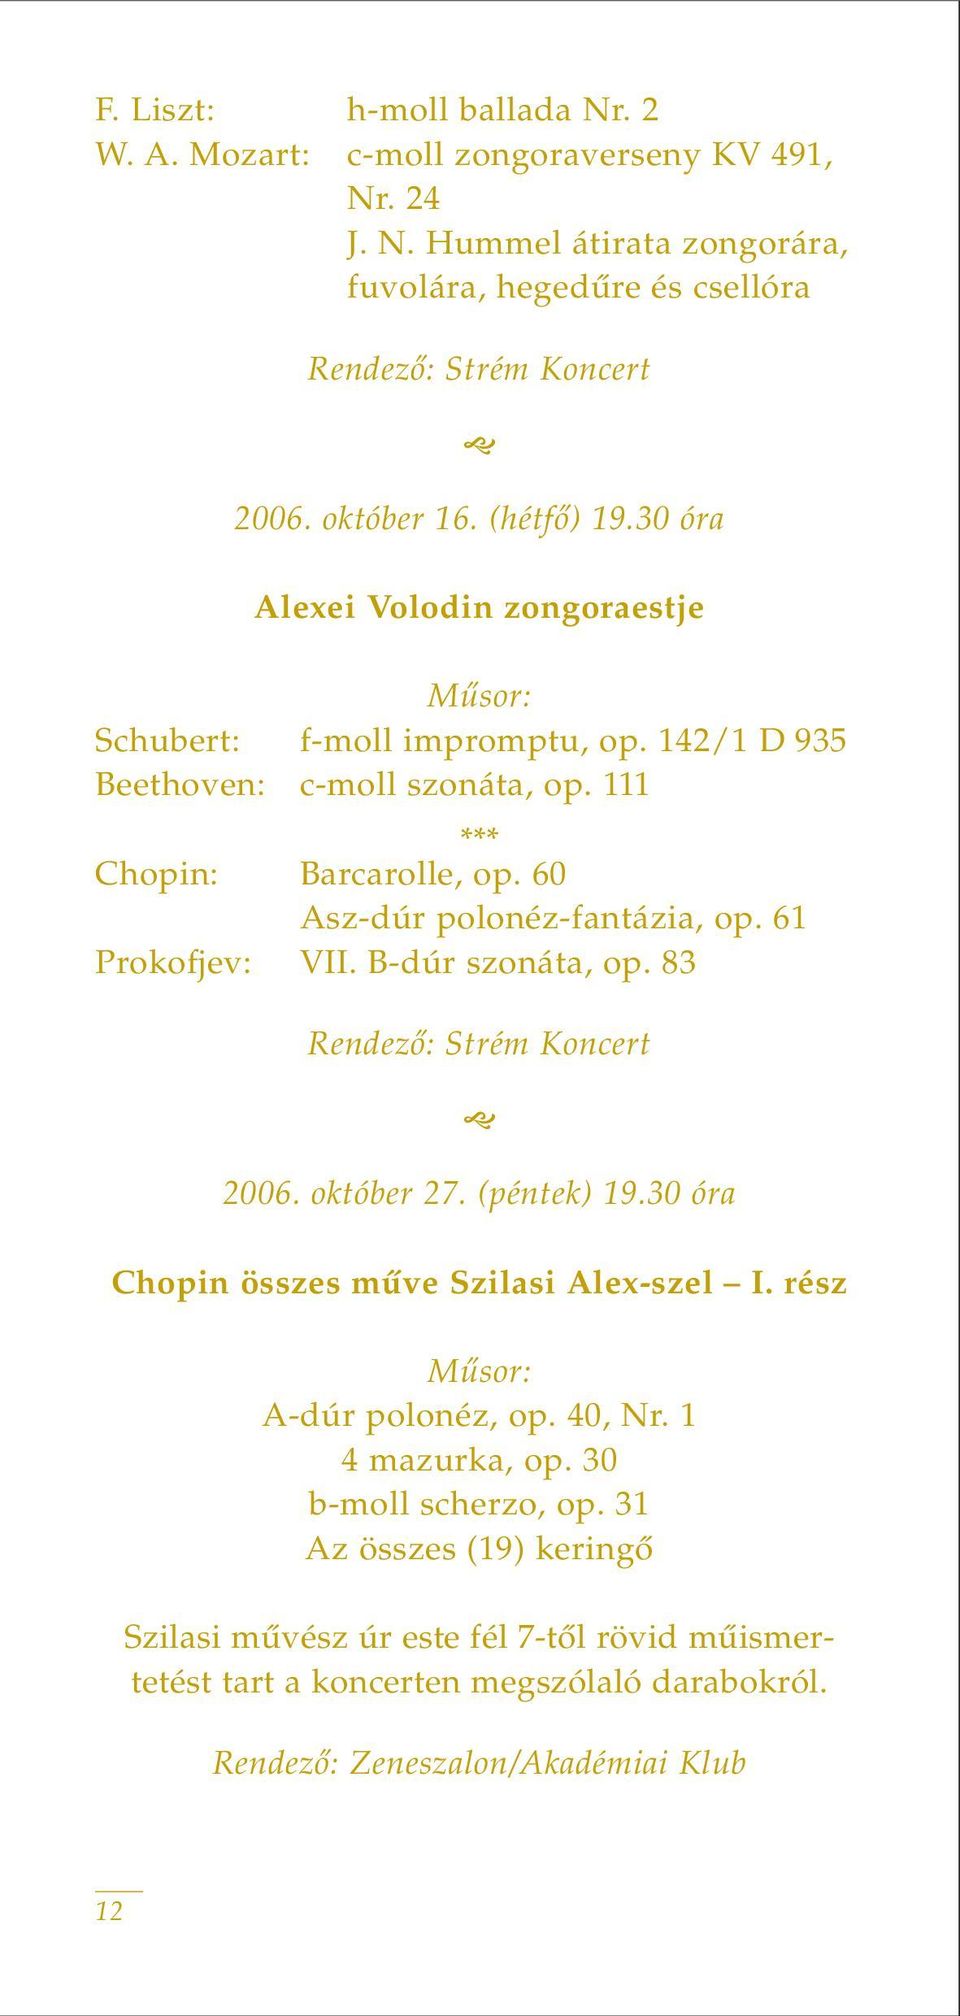 61 Prokofjev: VII. B-dúr szonáta, op. 83 Rendezô: Strém Koncert 2006. október 27. (péntek) 19.30 óra Chopin összes mûve Szilasi Alex-szel I. rész A-dúr polonéz, op. 40, Nr.